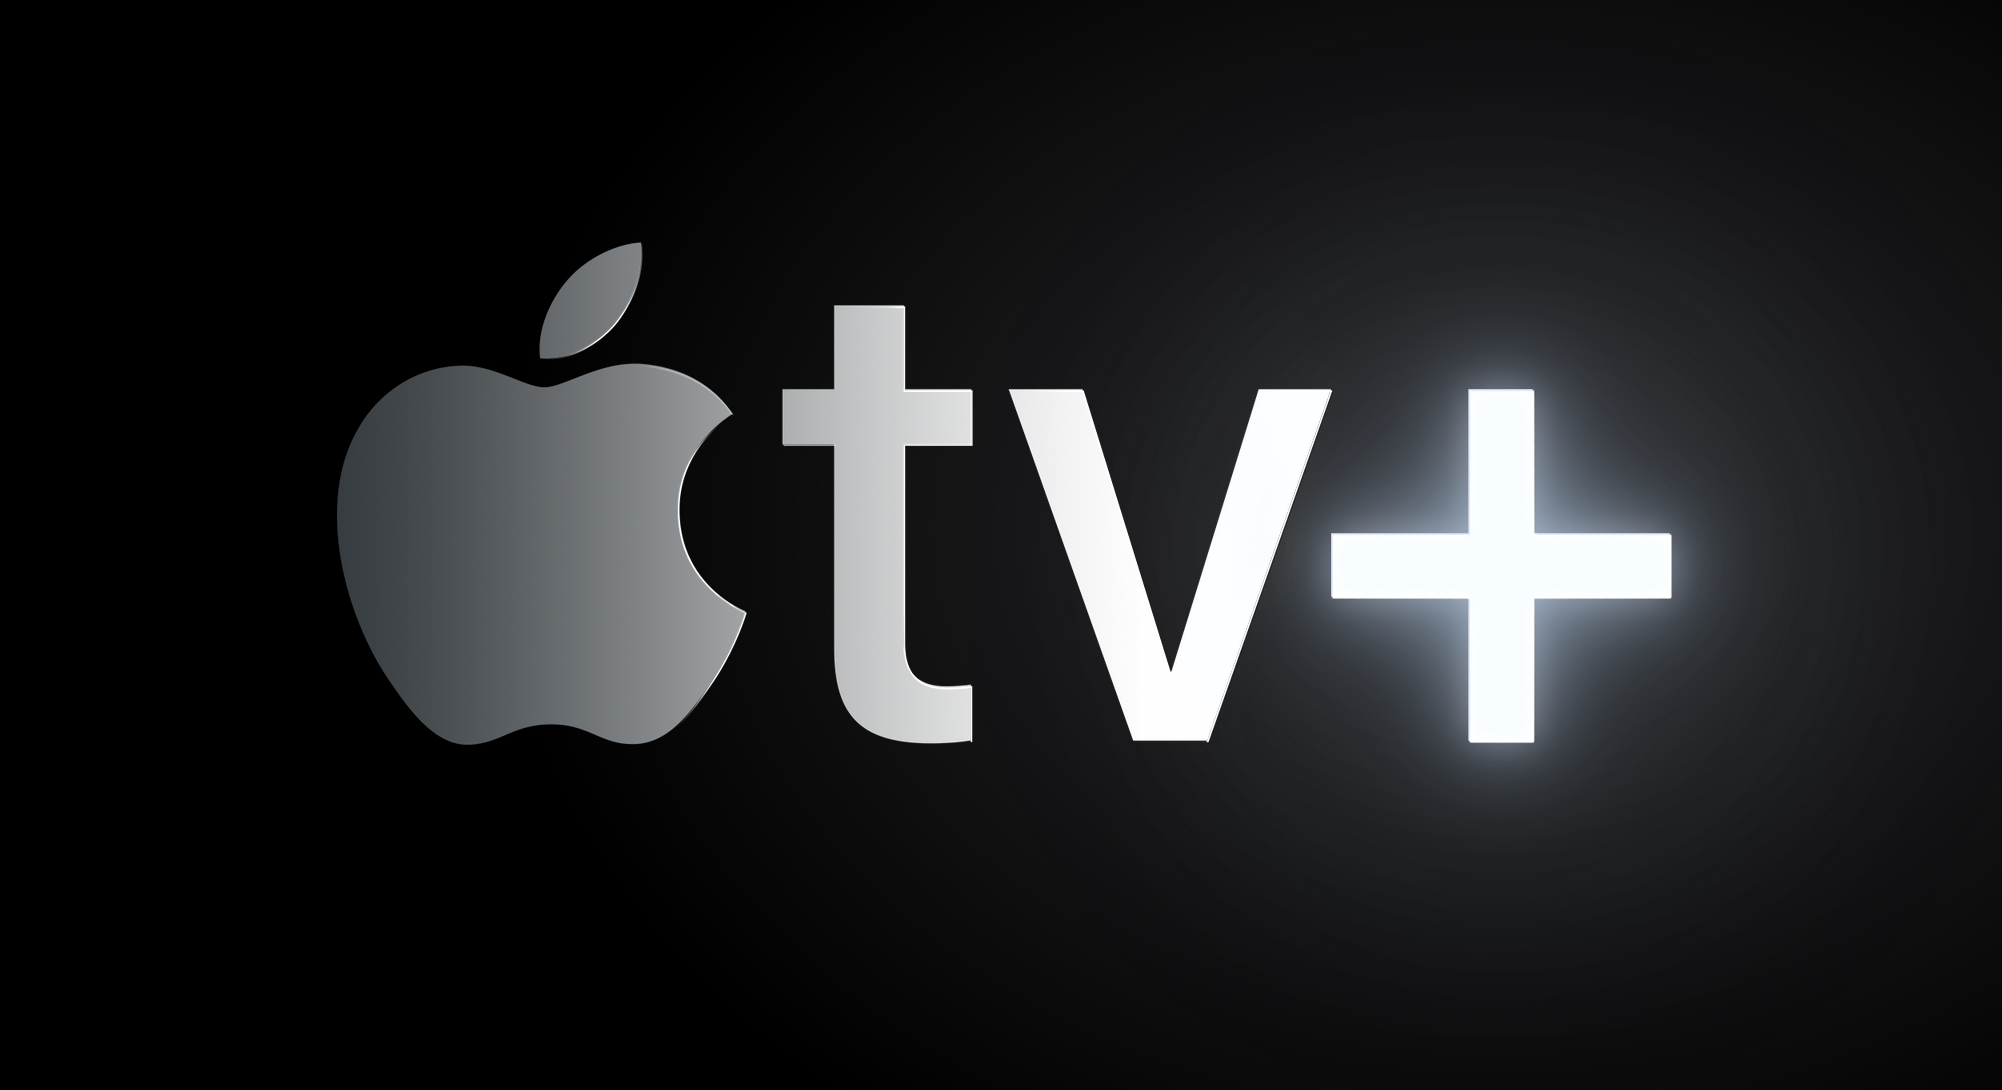 Como alterar ou cancelar assinatura da Apple TV+